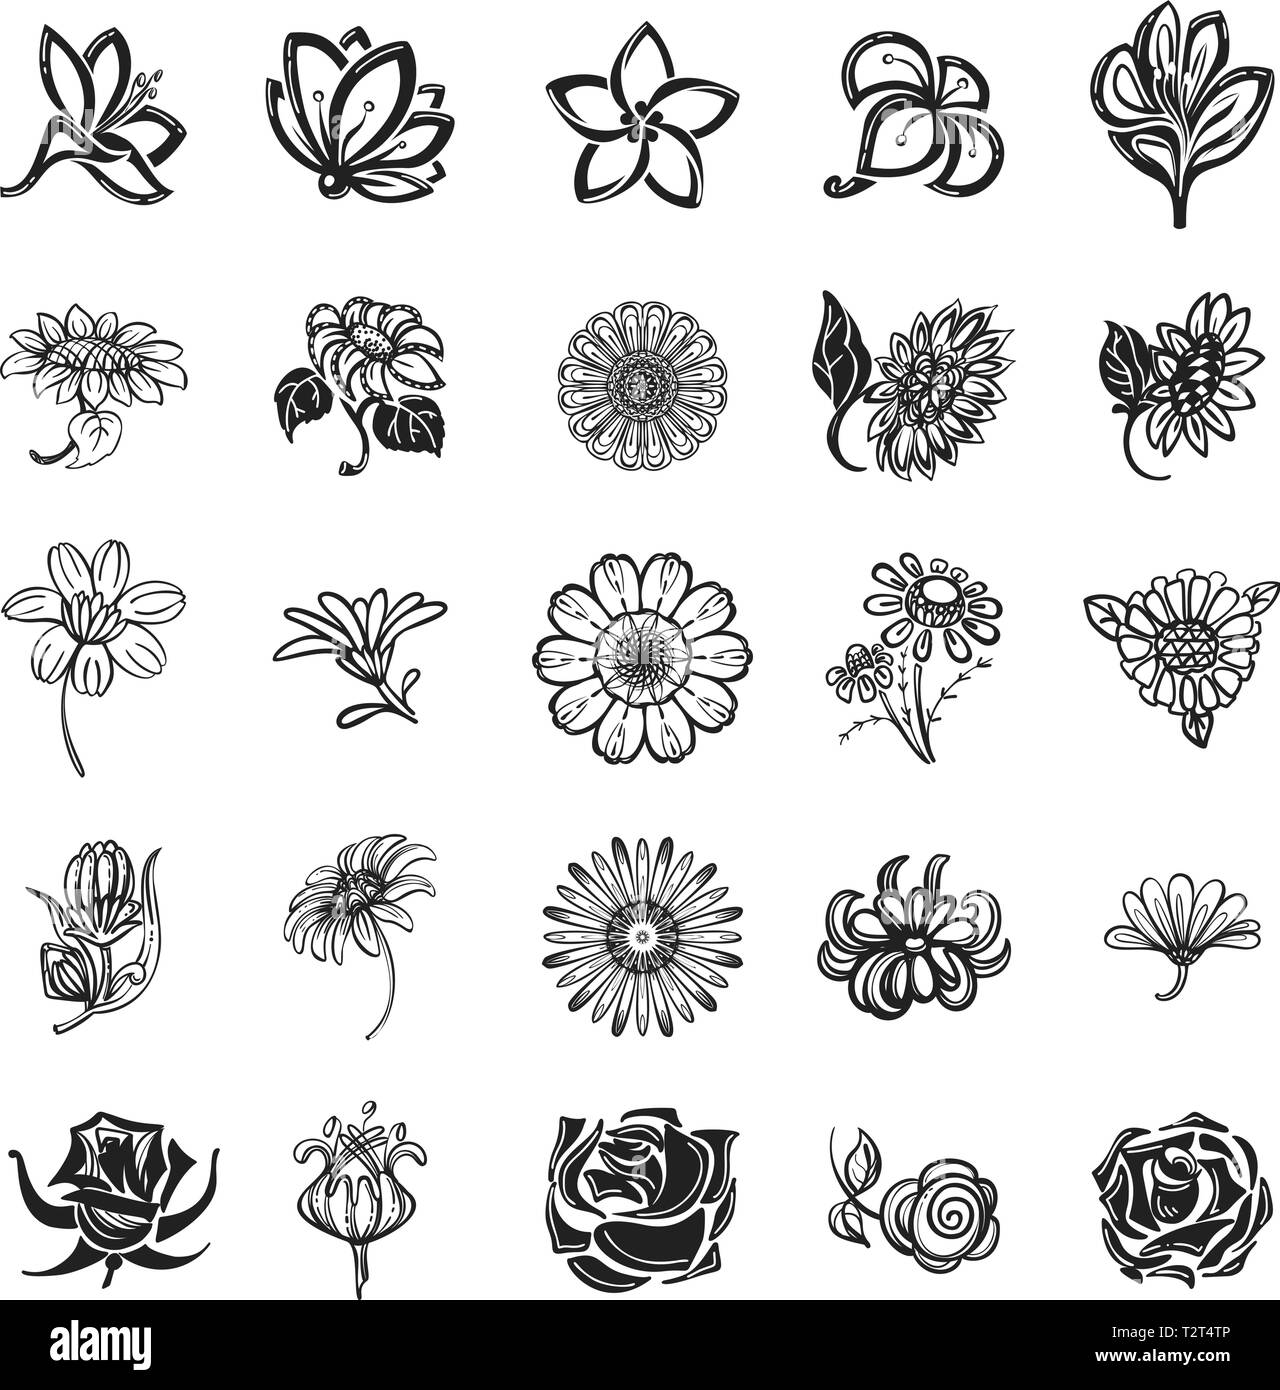 Blume Symbol Gesetzt Einfache Blume Vector Icons Fur Web Design Auf Weissem Hintergrund Stock Vektorgrafik Alamy